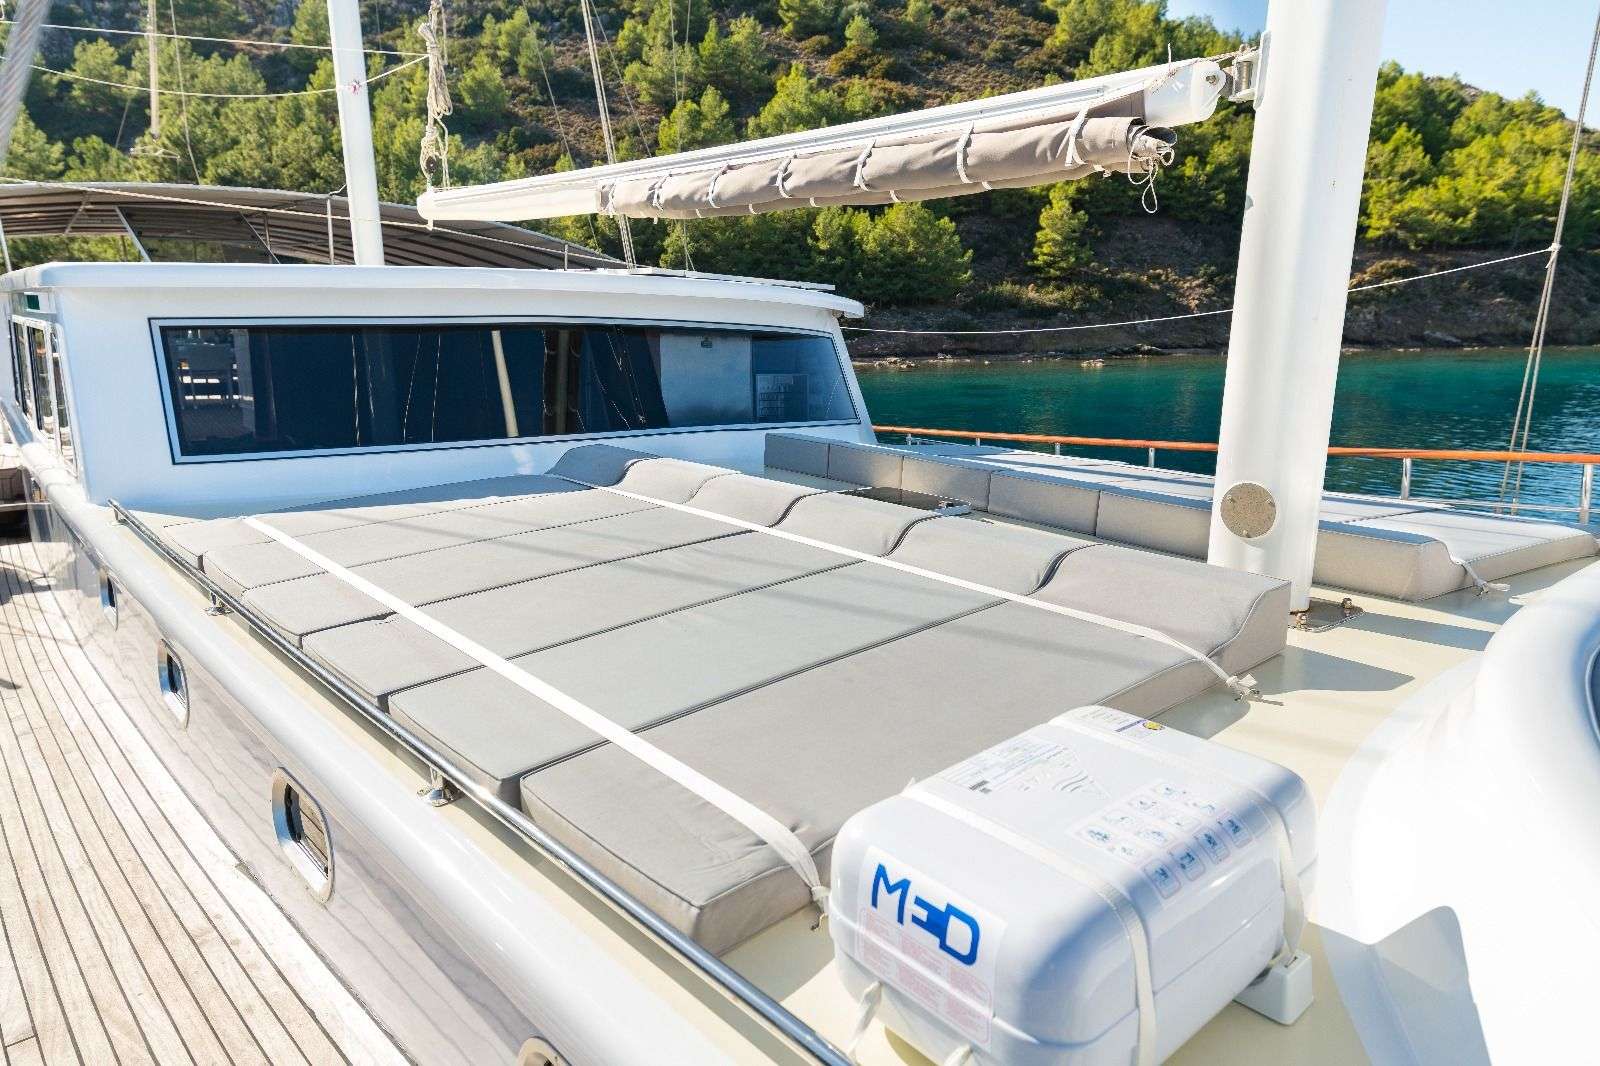 koray ege - Motor Boat Charter Turkey & Boat hire in Greece & Turkey 3